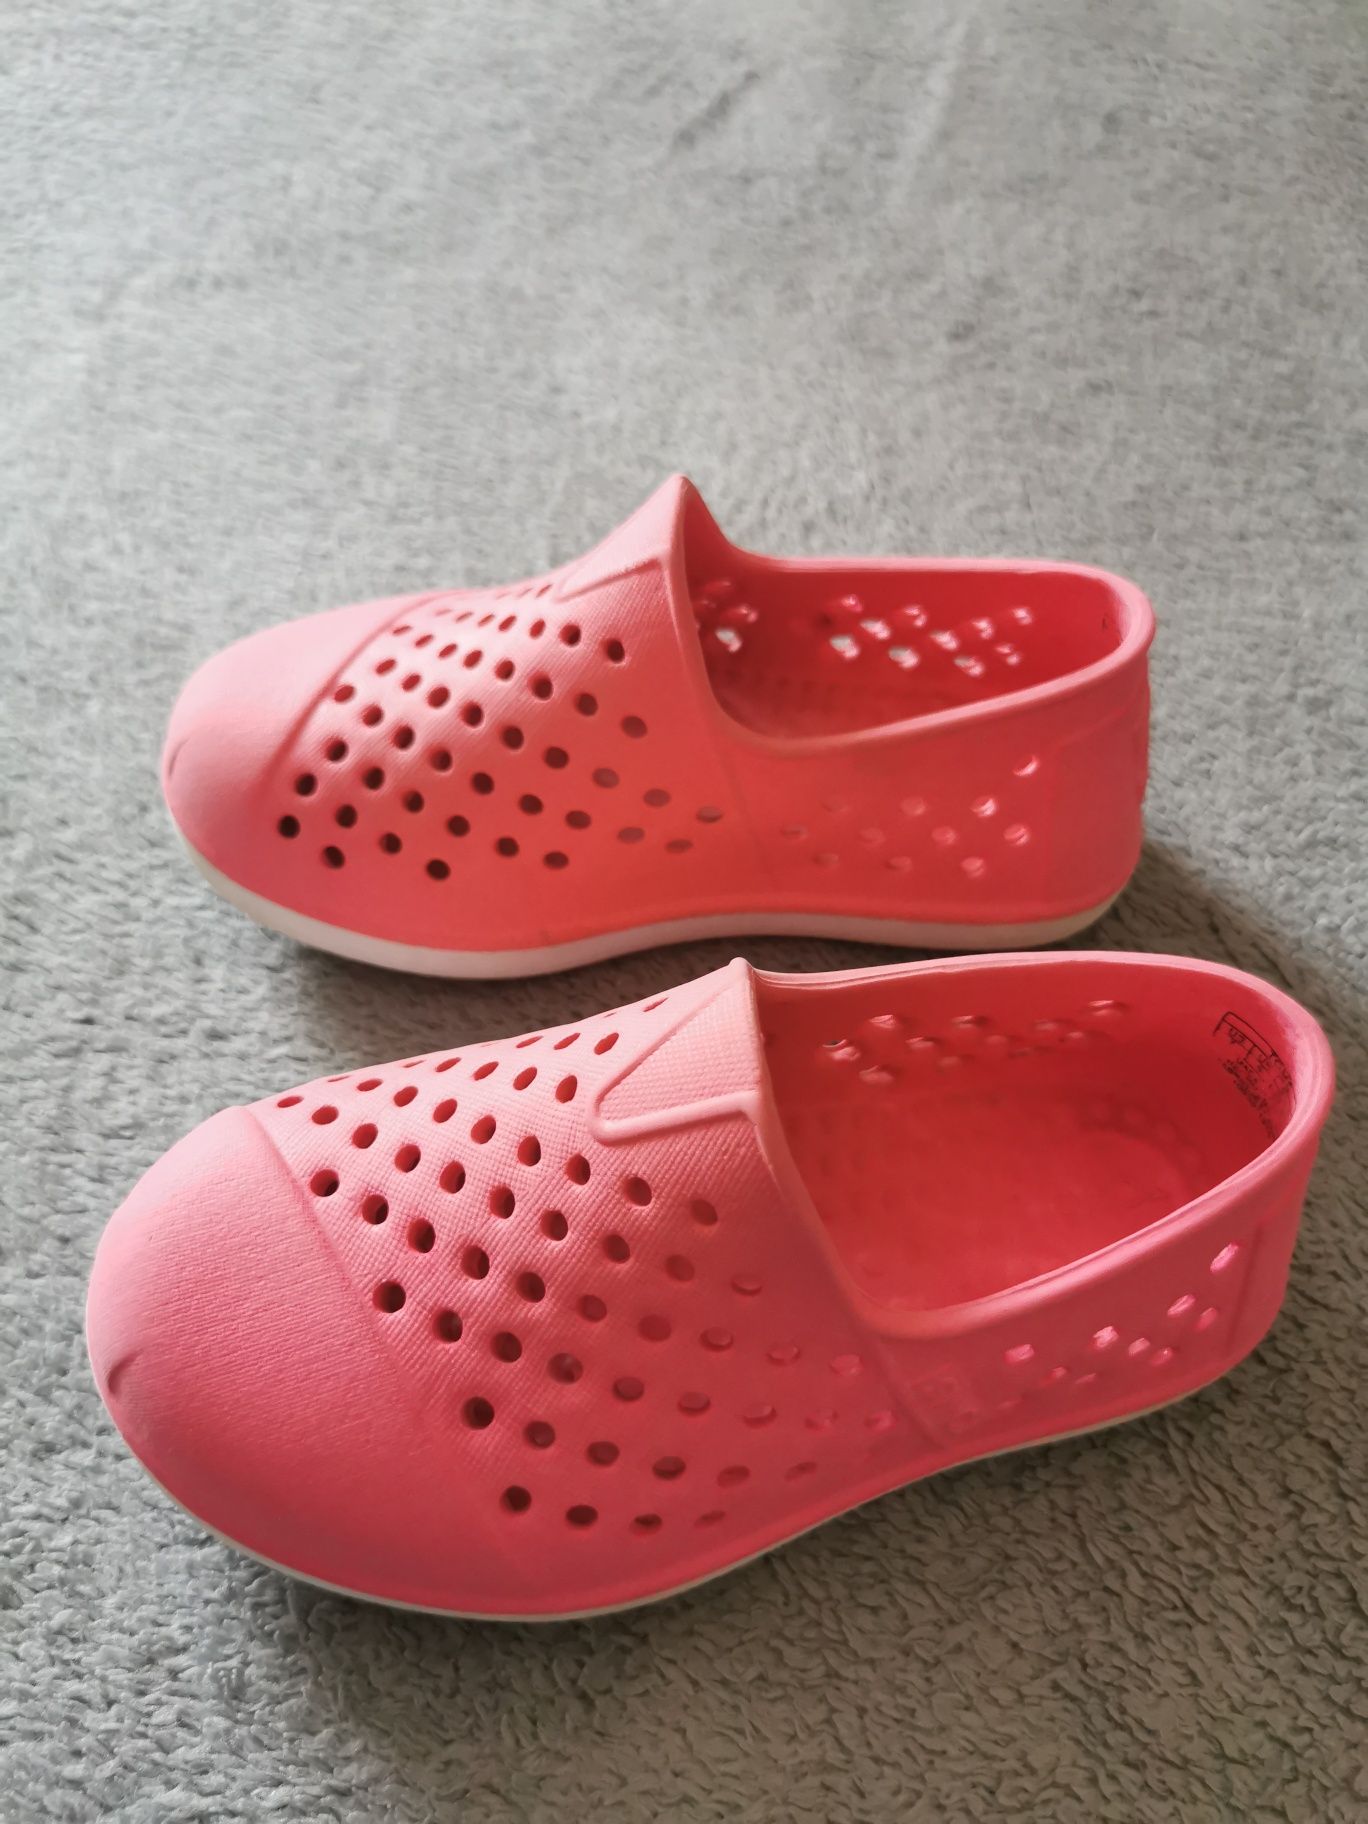 TOMS Romper rozmiar 23.5 14cm różowe buty piankowe dla dziecka